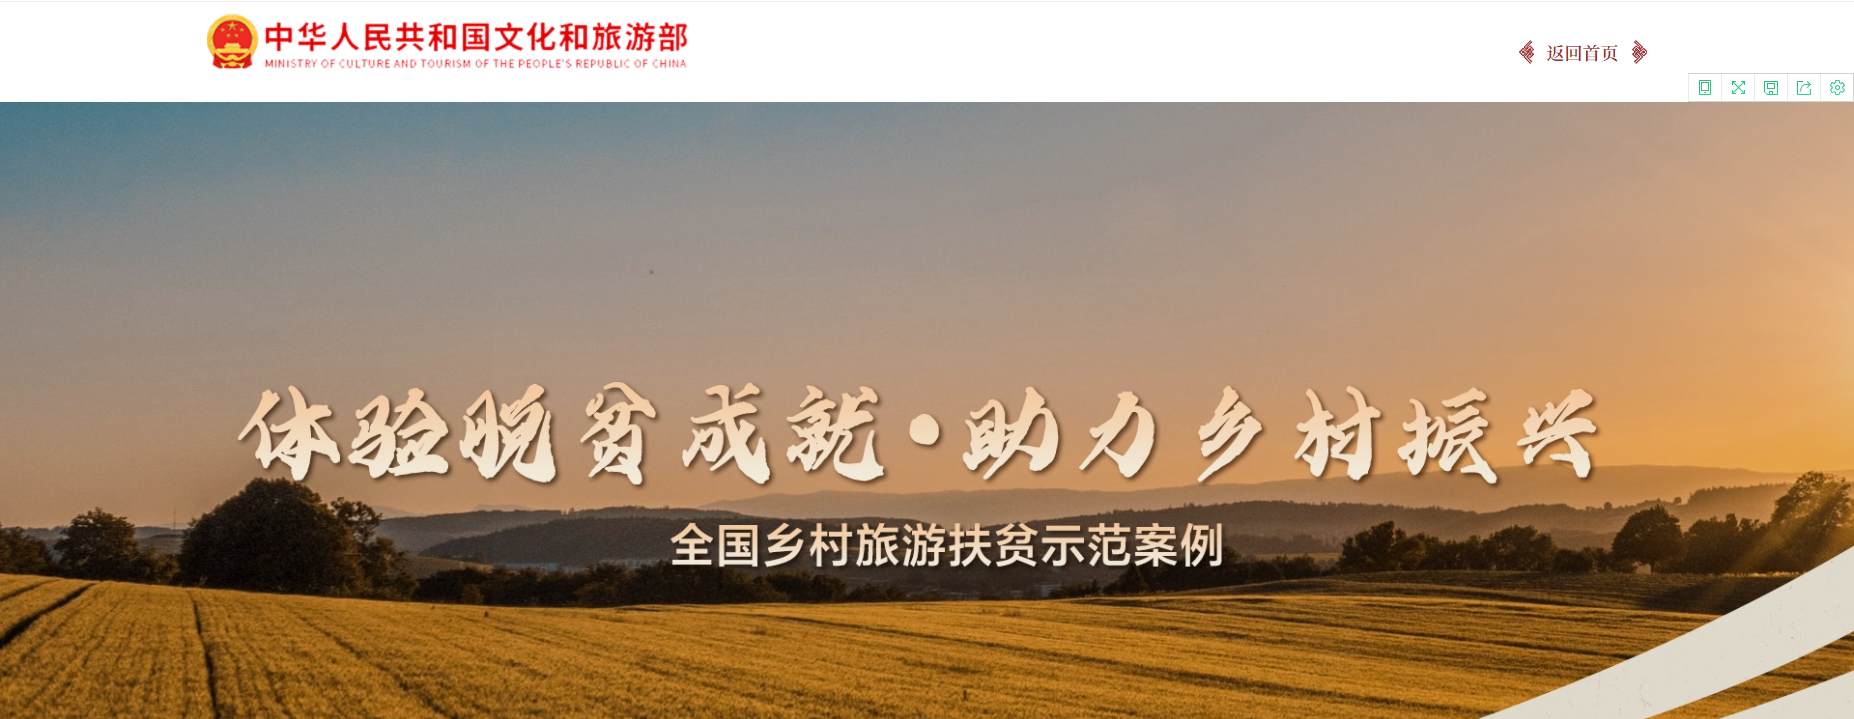 陕西省4个案例入选全国乡村旅游扶贫示范案例